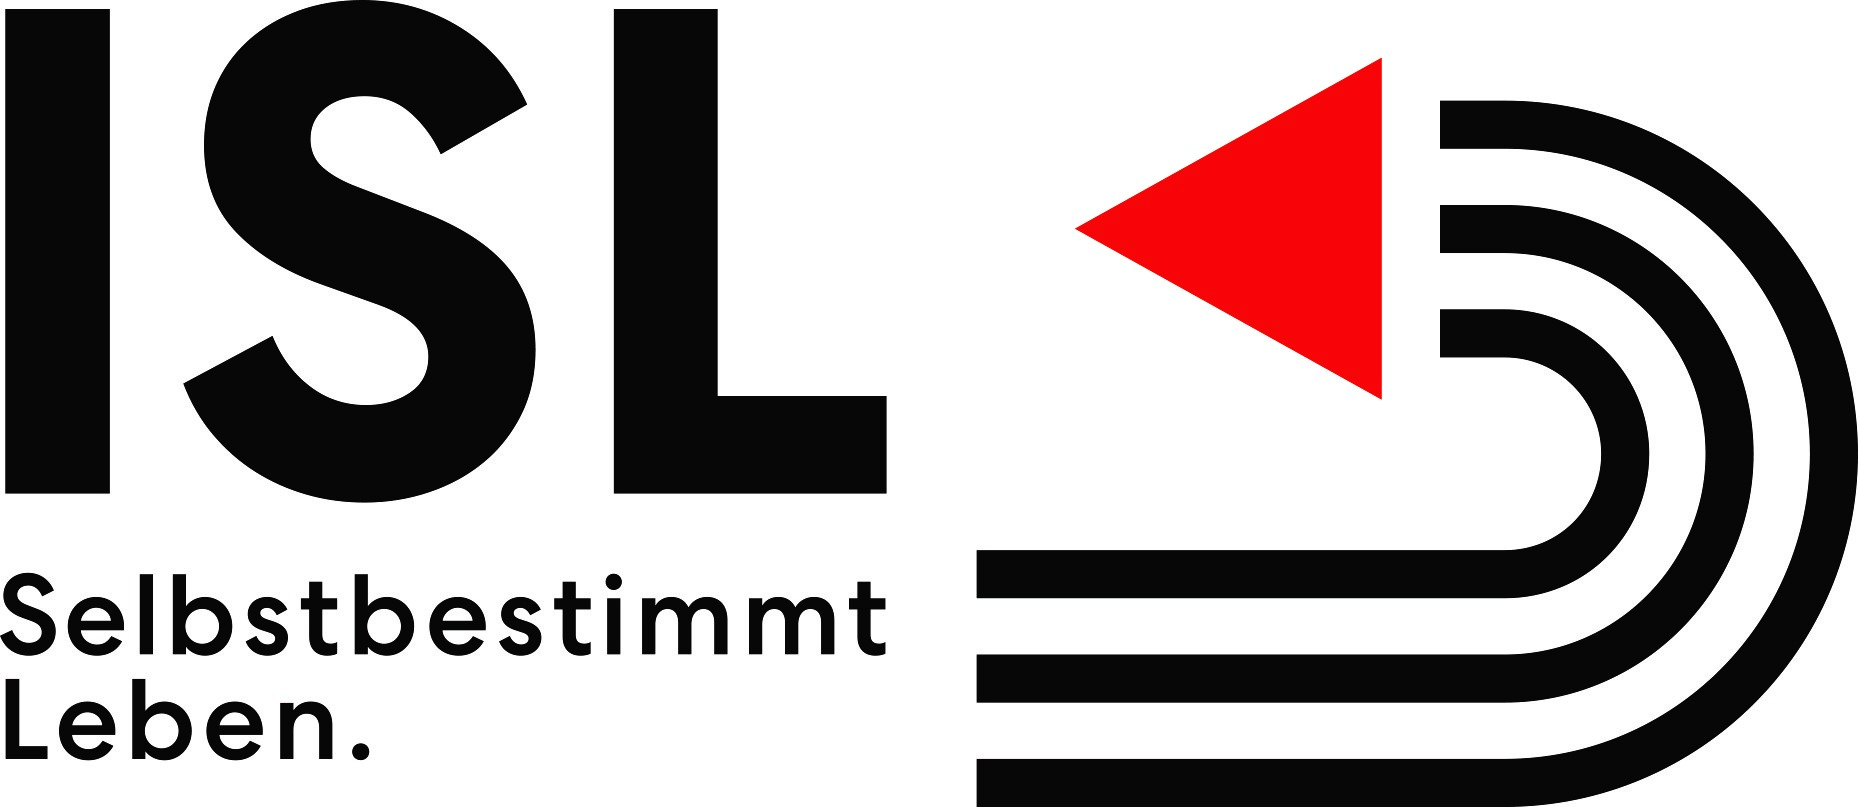 Logo ISL e.V.